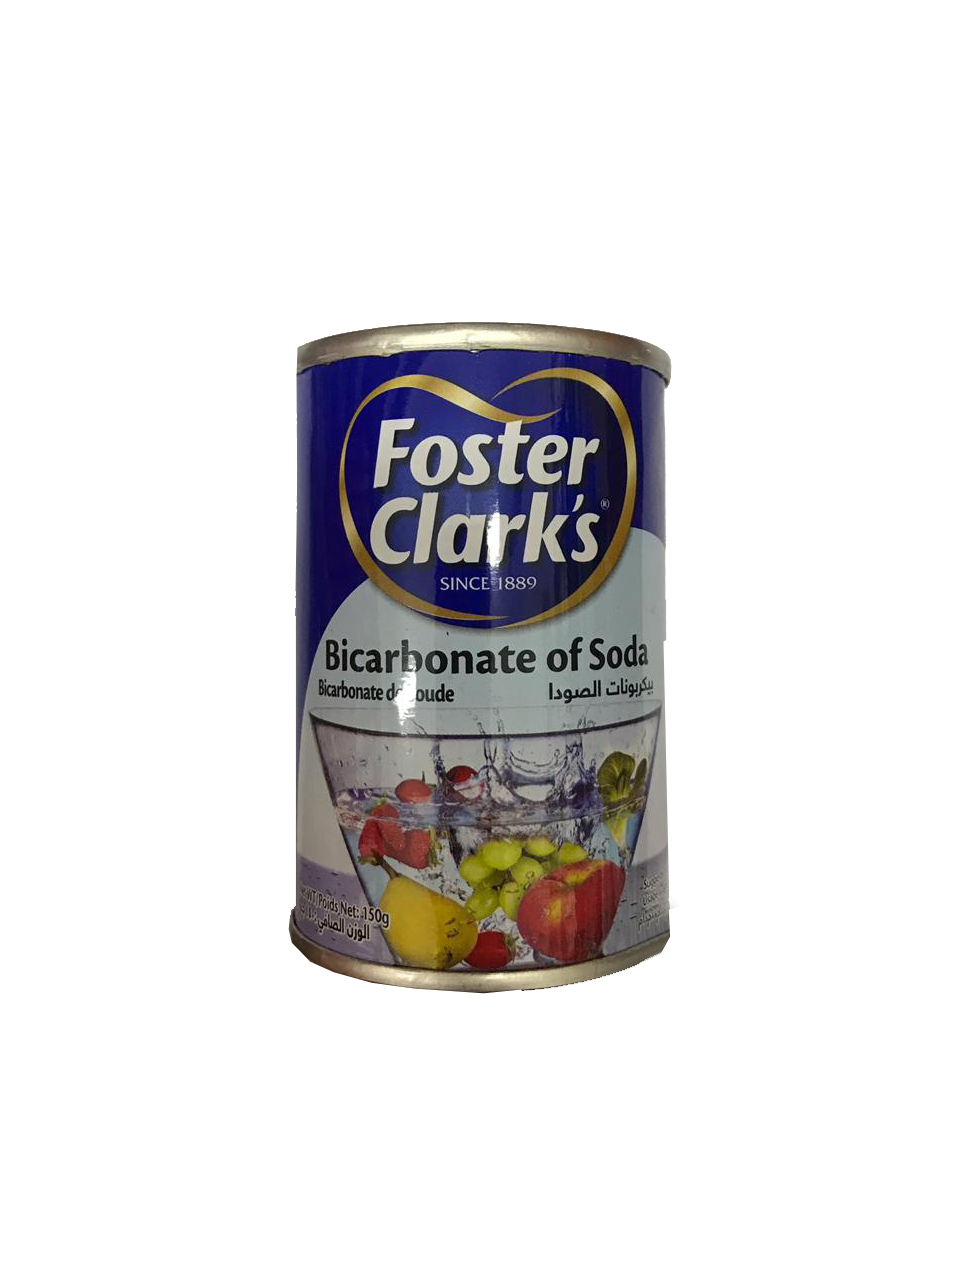 Foster Clark Bicarbonate Soda (Baking Soda) 150g